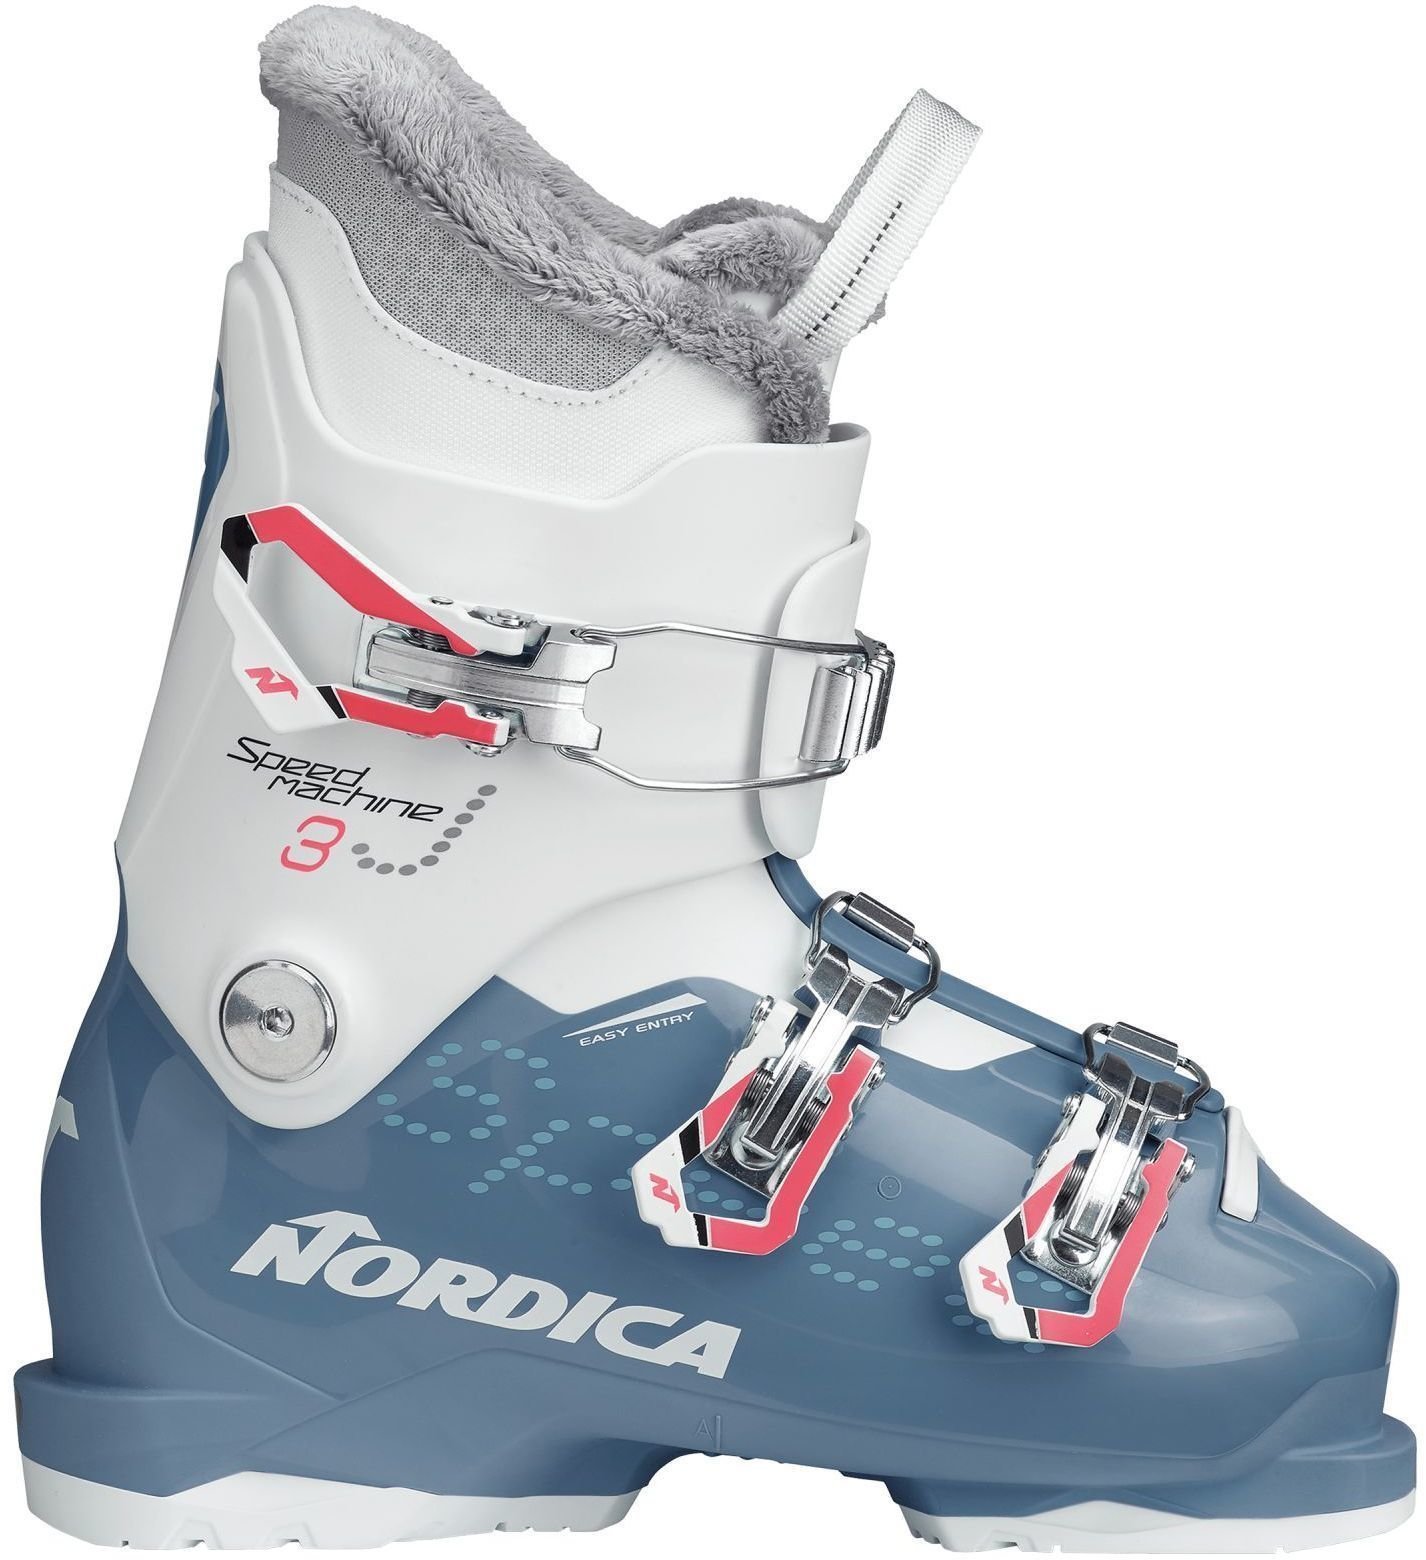 Alpineskischoenen Nordica Speedmachine J3 Light Blue/White 235 Alpineskischoenen